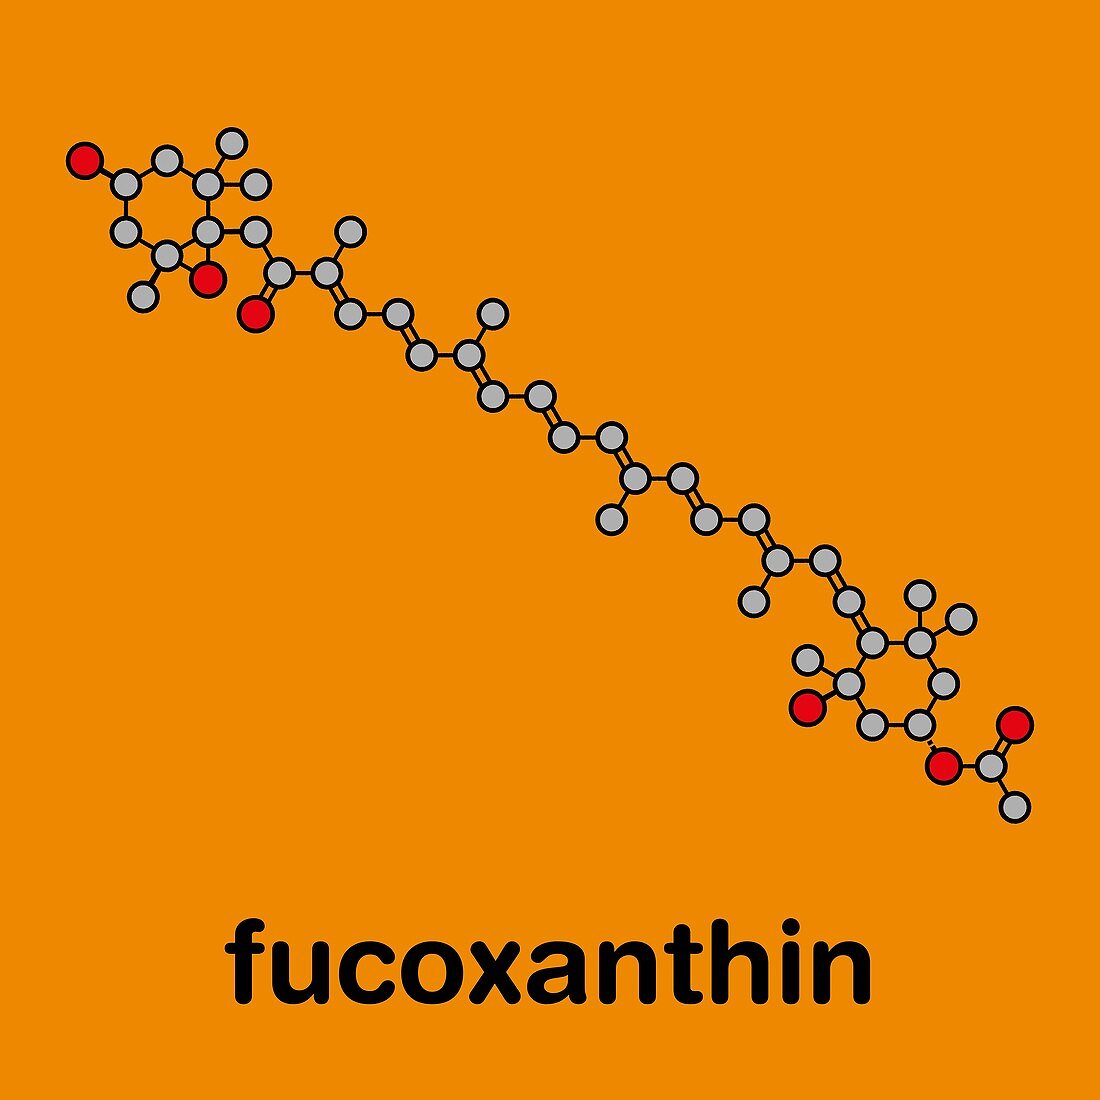 Fucoxanthin brown algae pigment molecule, illustration